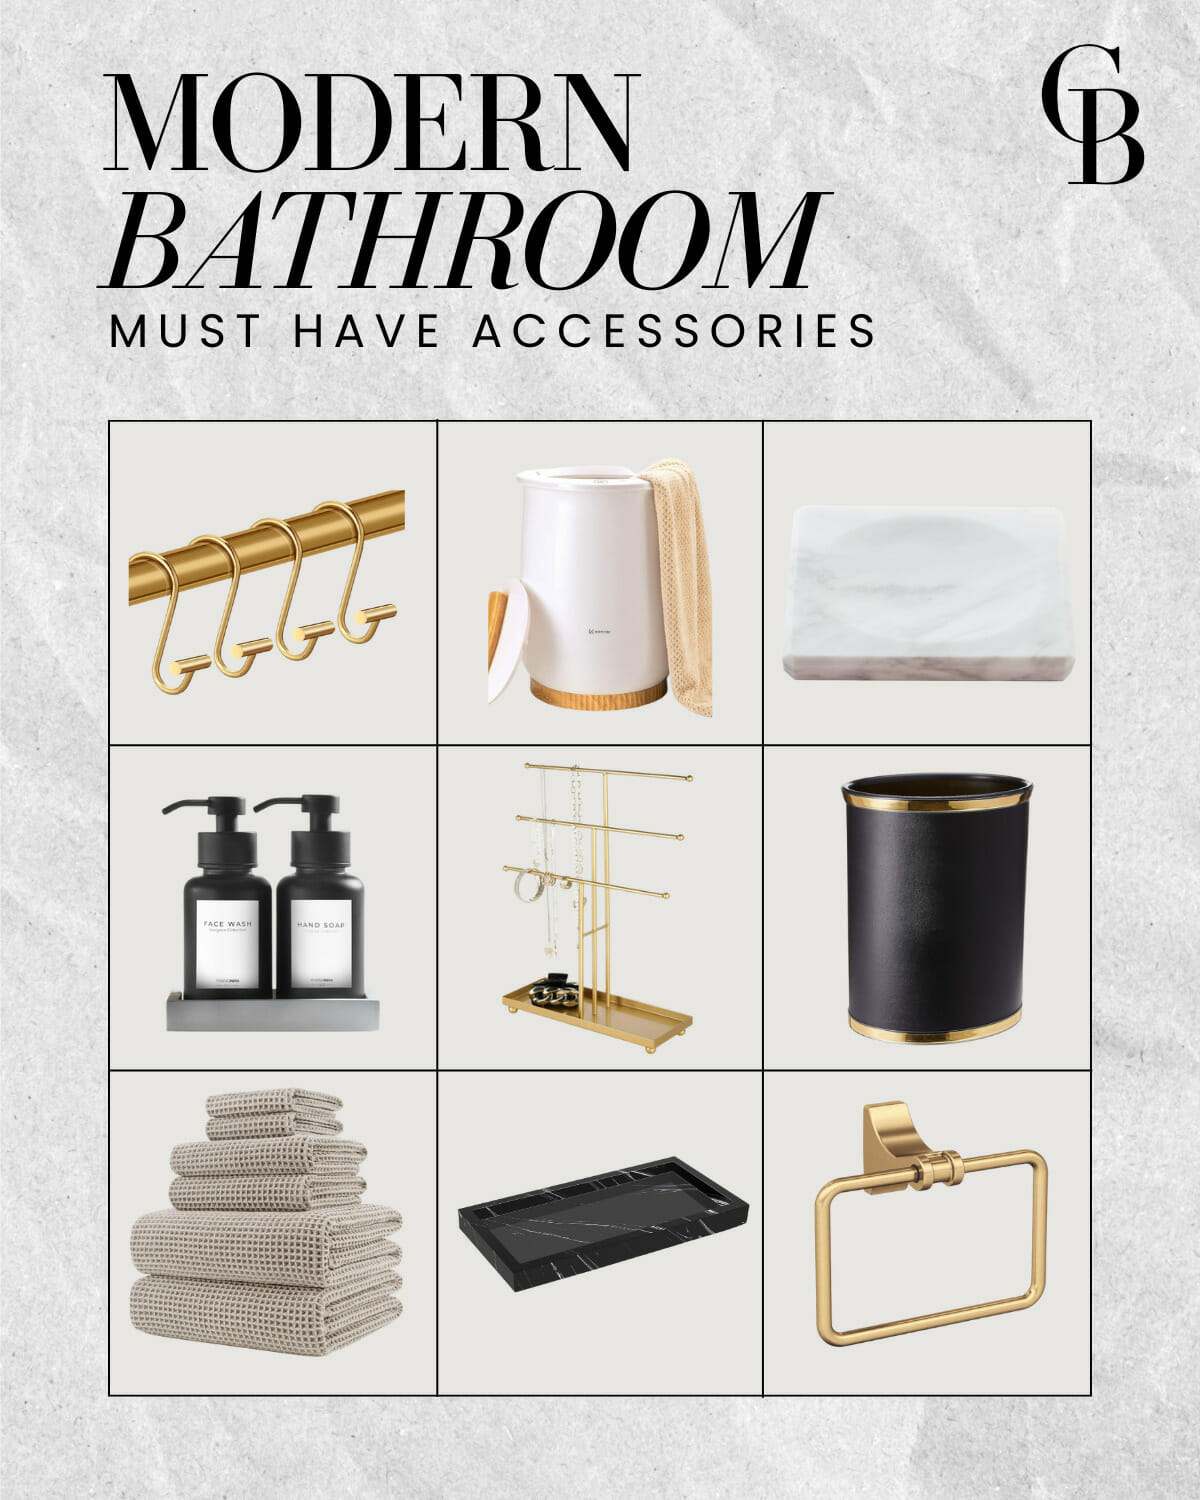 modern bathroom decor and organization | #modern #modernbathroom #bathroomdecor #minimalist #organization #storage #accessories #wicker